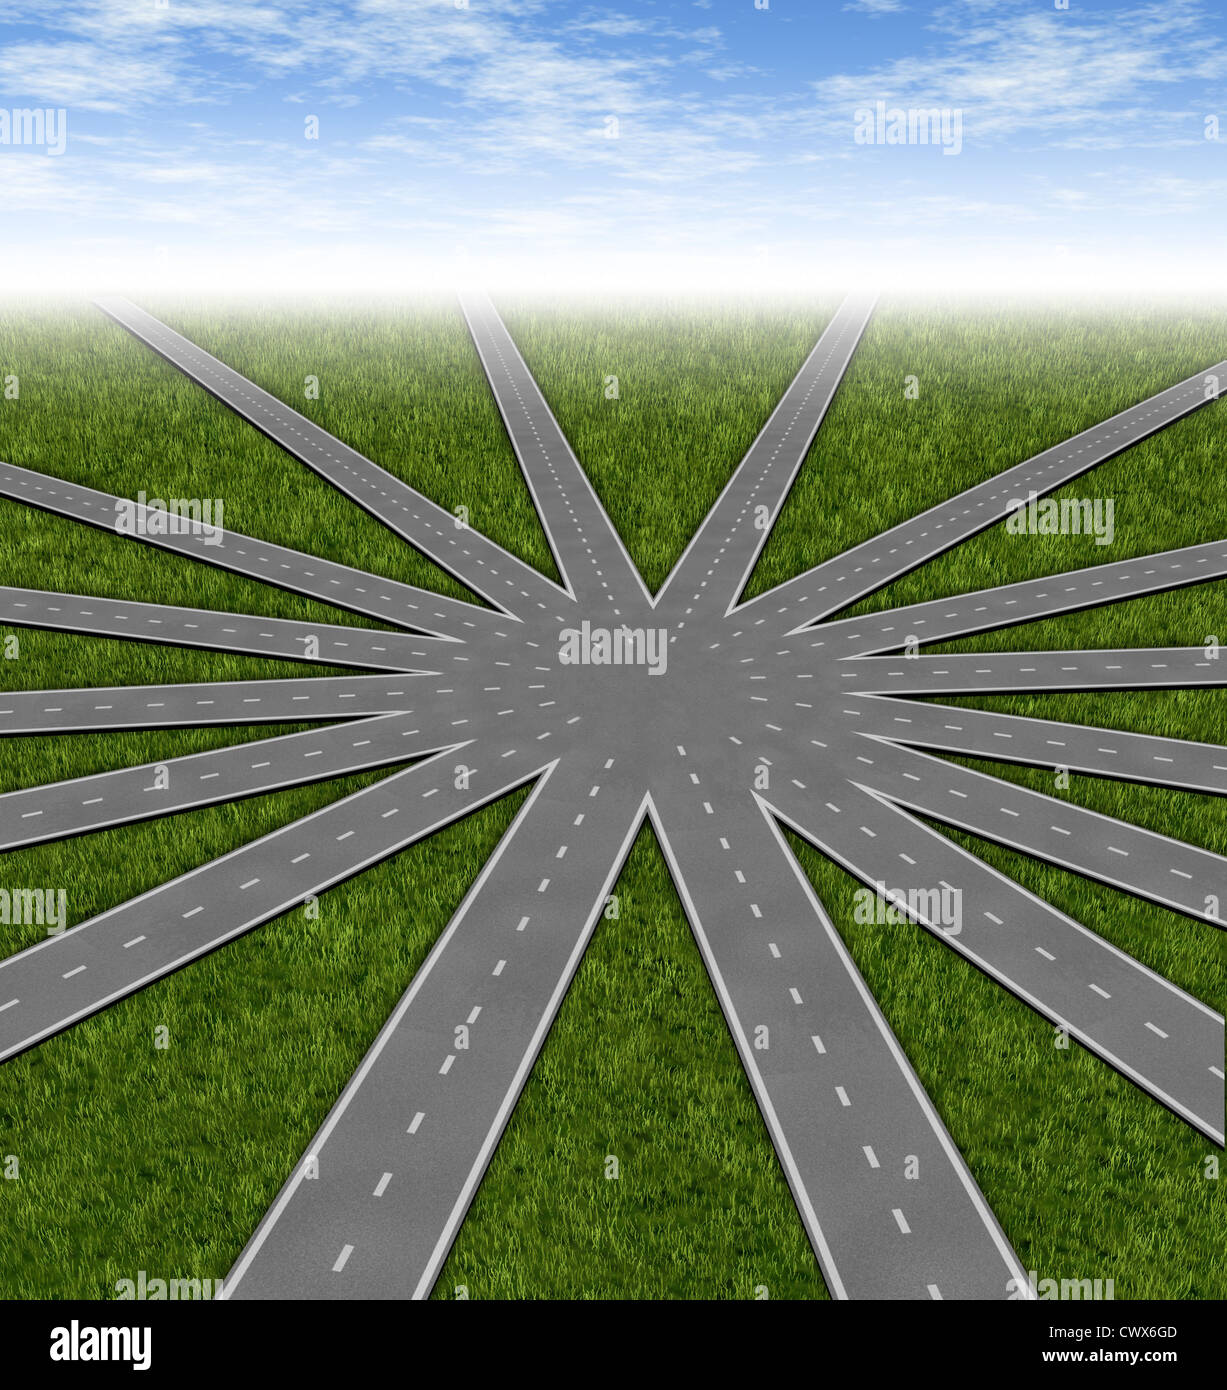 Entscheidungen und Strategien Symbol dargestellt durch ein Netz von Straßen und Autobahnen verschmelzen zu einem Mittelpunkt mit vielen Optionen und Stockfoto